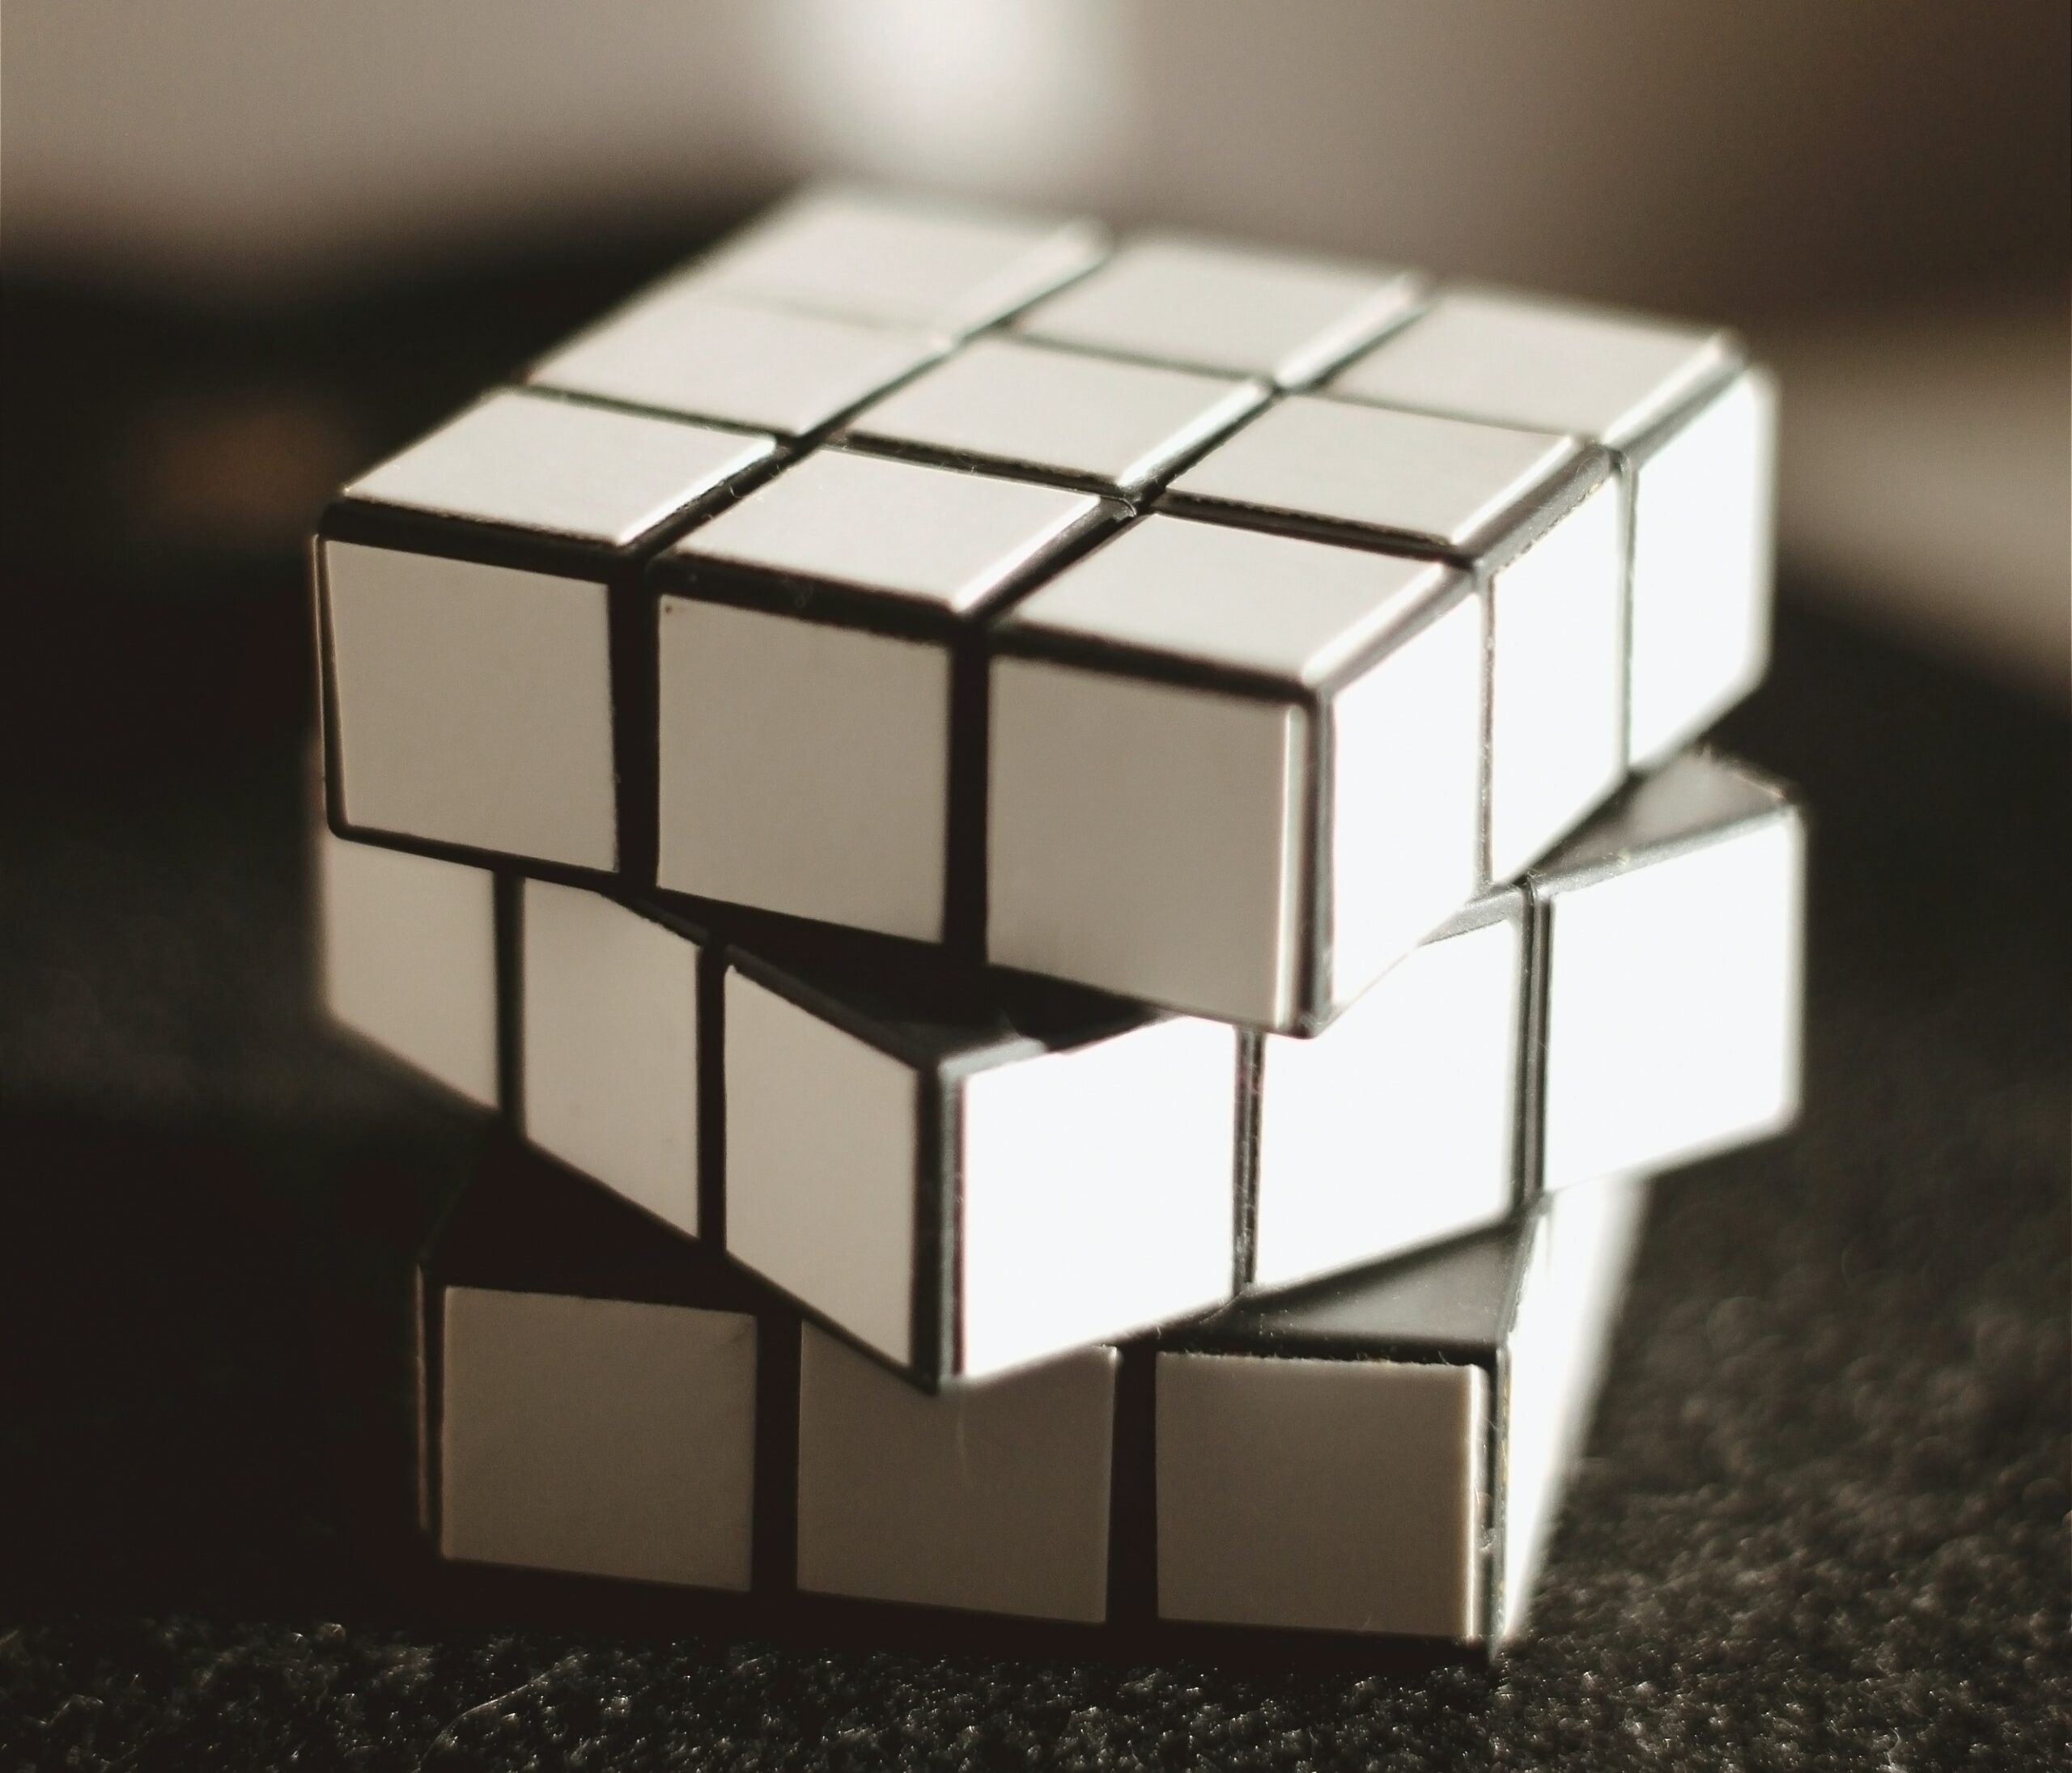 Rubicls cube met alleen witte vlakken